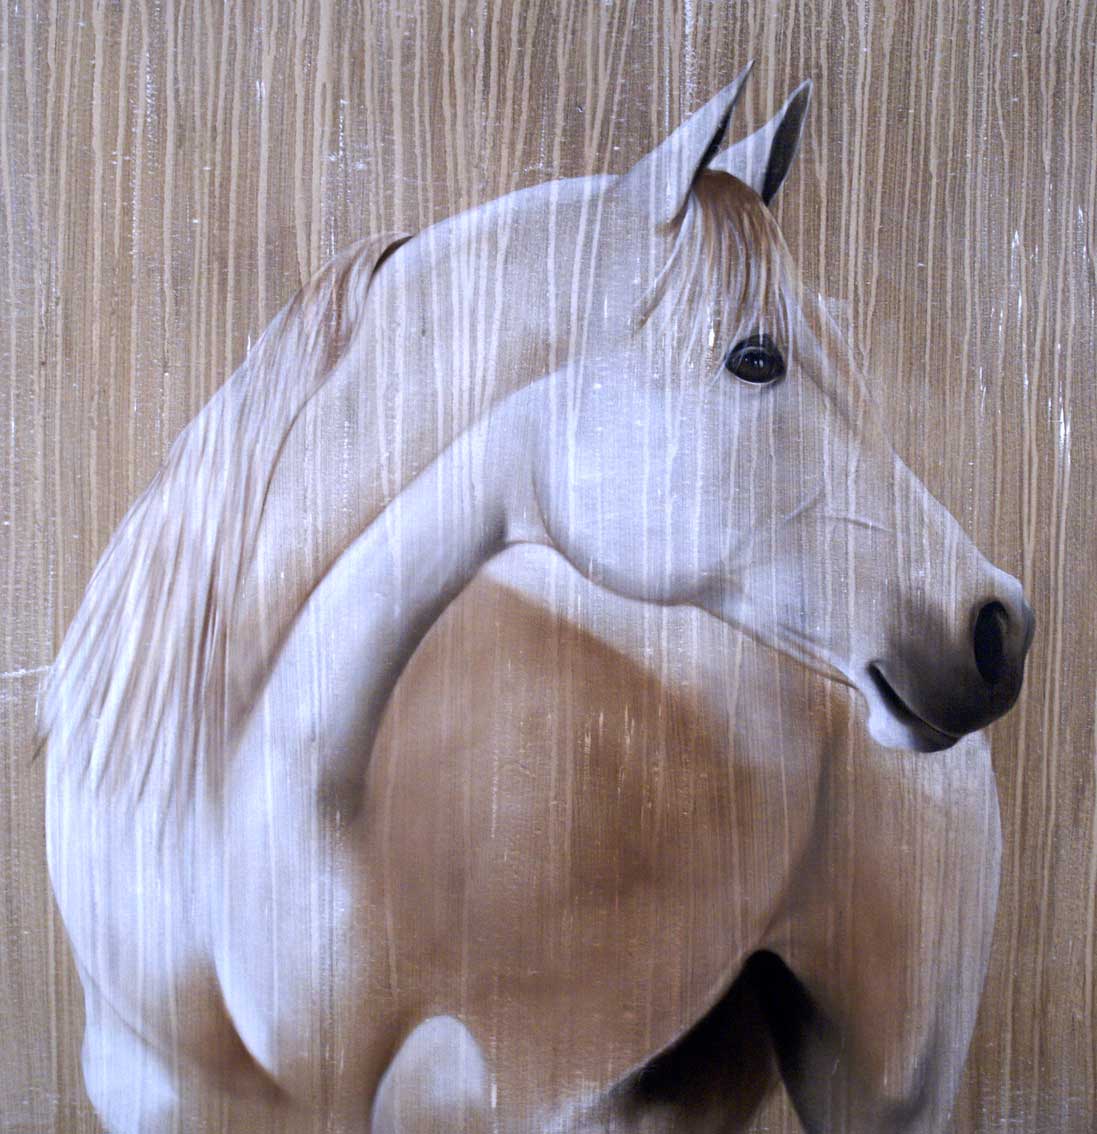 Pur-Sang-Arabe cheval-Pur-sang-arabe Thierry Bisch artiste peintre contemporain animaux tableau art décoration biodiversité conservation 